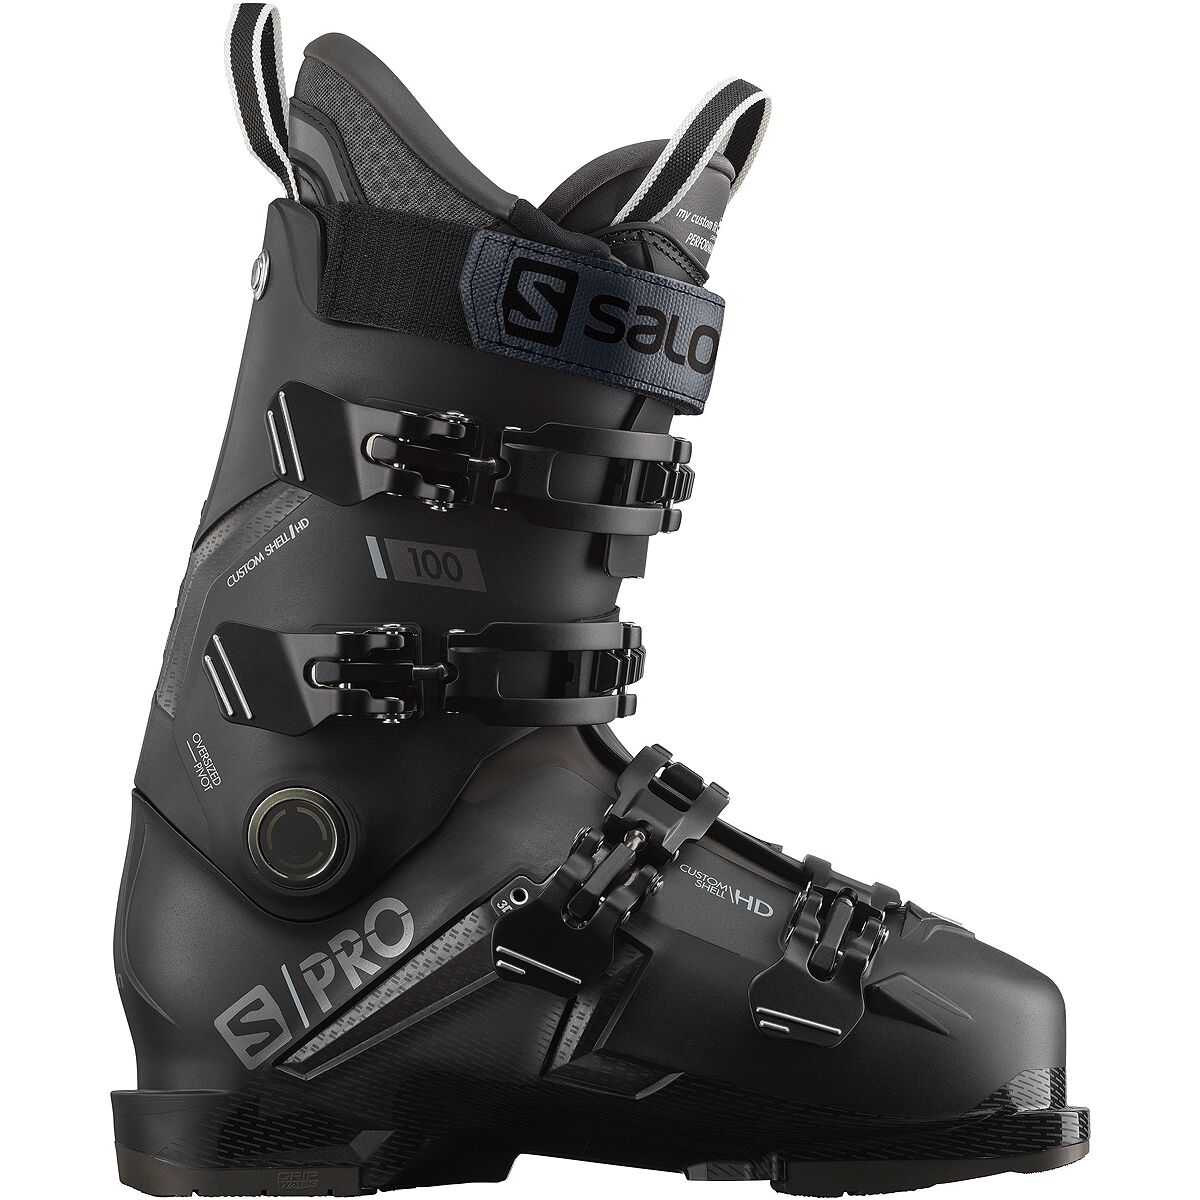 S/Pro 100 GW Ski Boot - Men